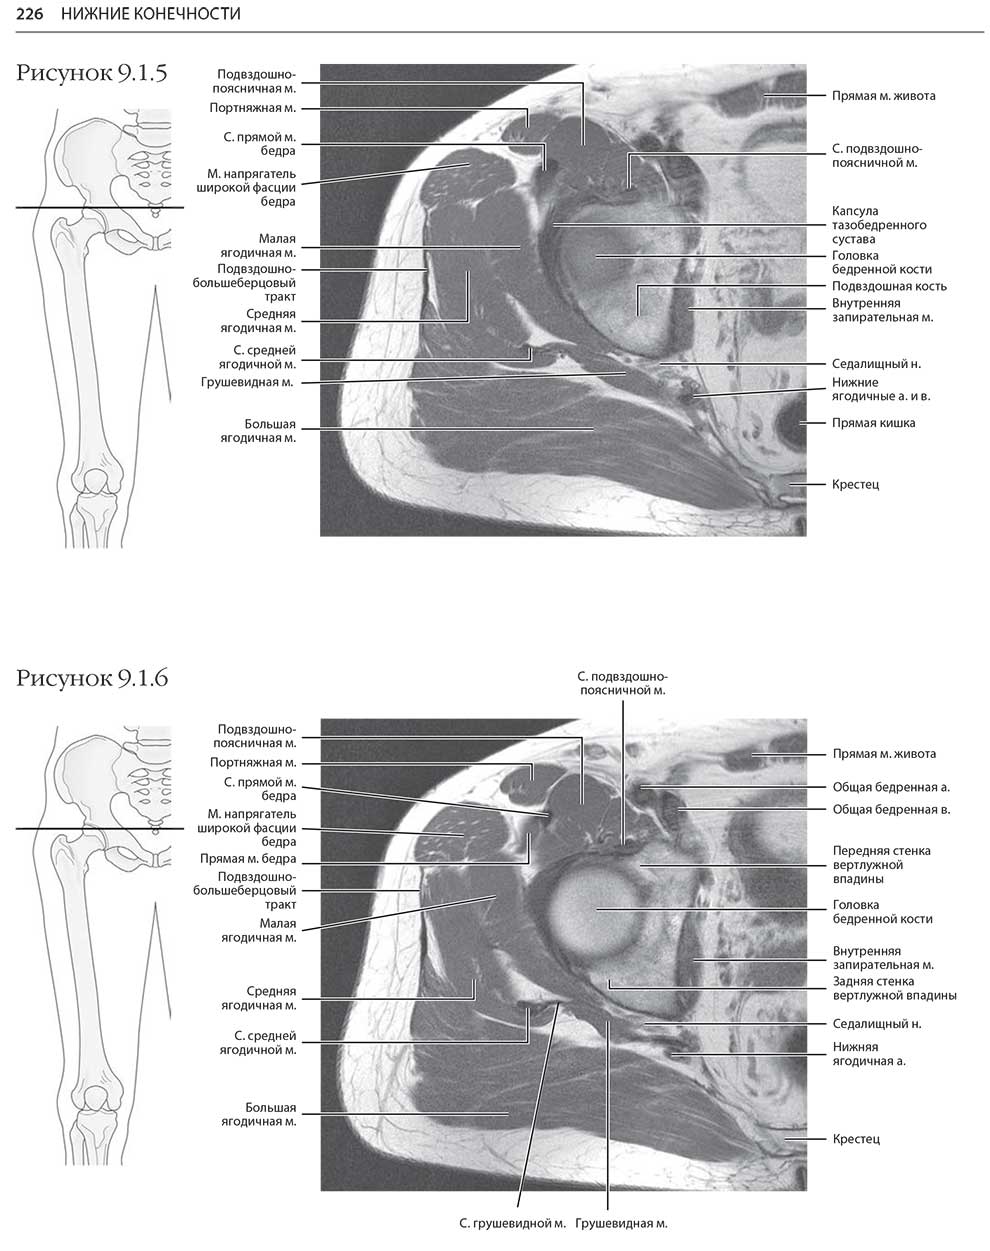 Пример страницы из книги "МРТ и КТ. Секционная анатомия" - Андерсон М. В., Фокс М. Дж.